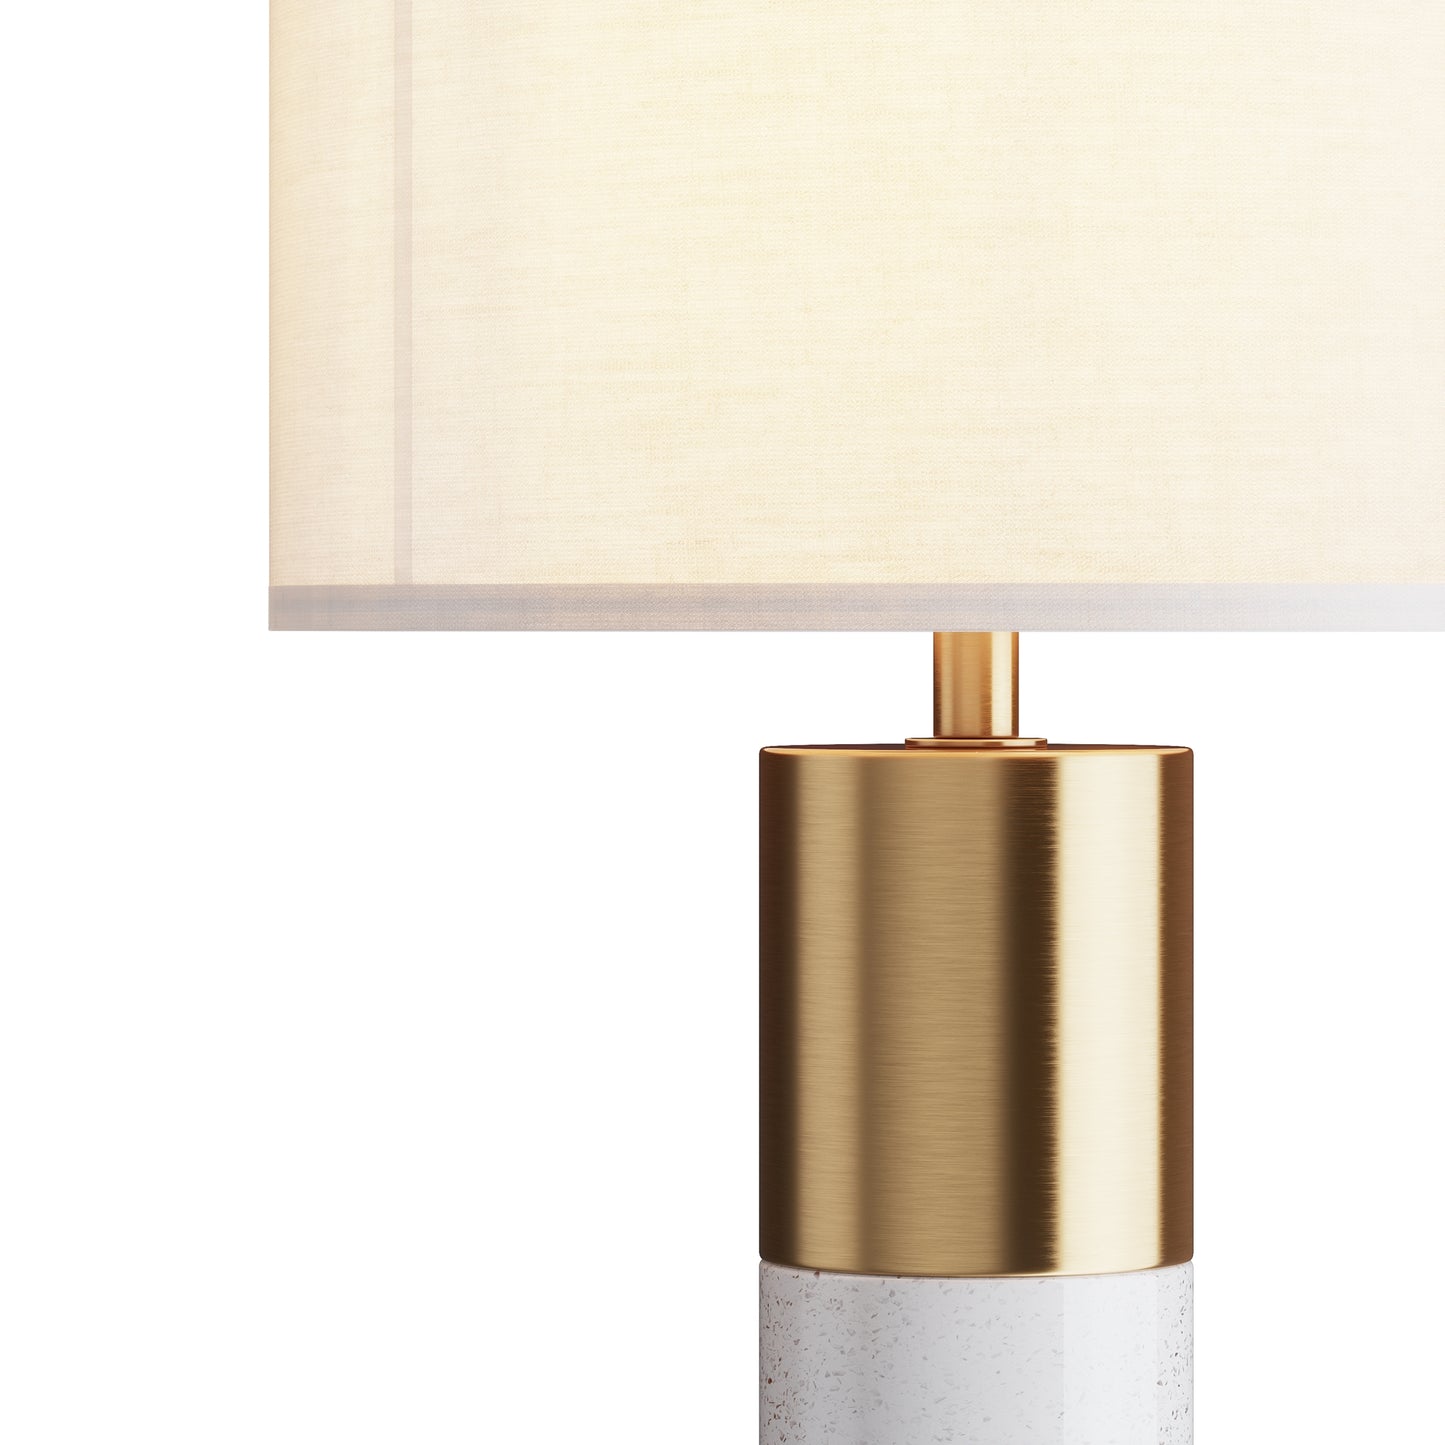 Une Lampe de Chevet de grande qualité en Albâtre avec un liseron doré.